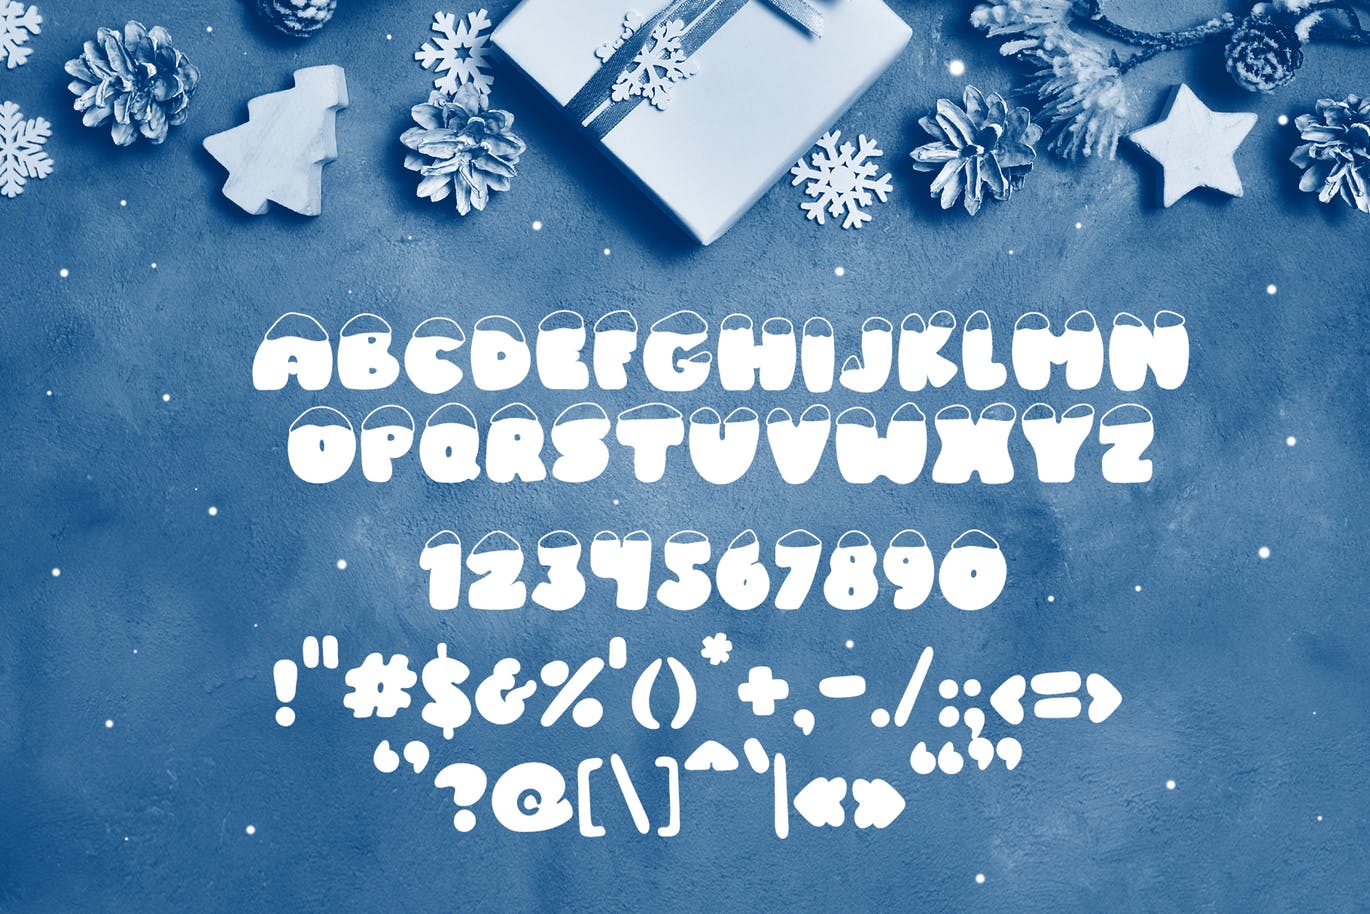 斯堪的纳维亚风格可爱积雪字体蚂蚁素材精选 Frosty Joy Hand Drawn Display Font插图(5)